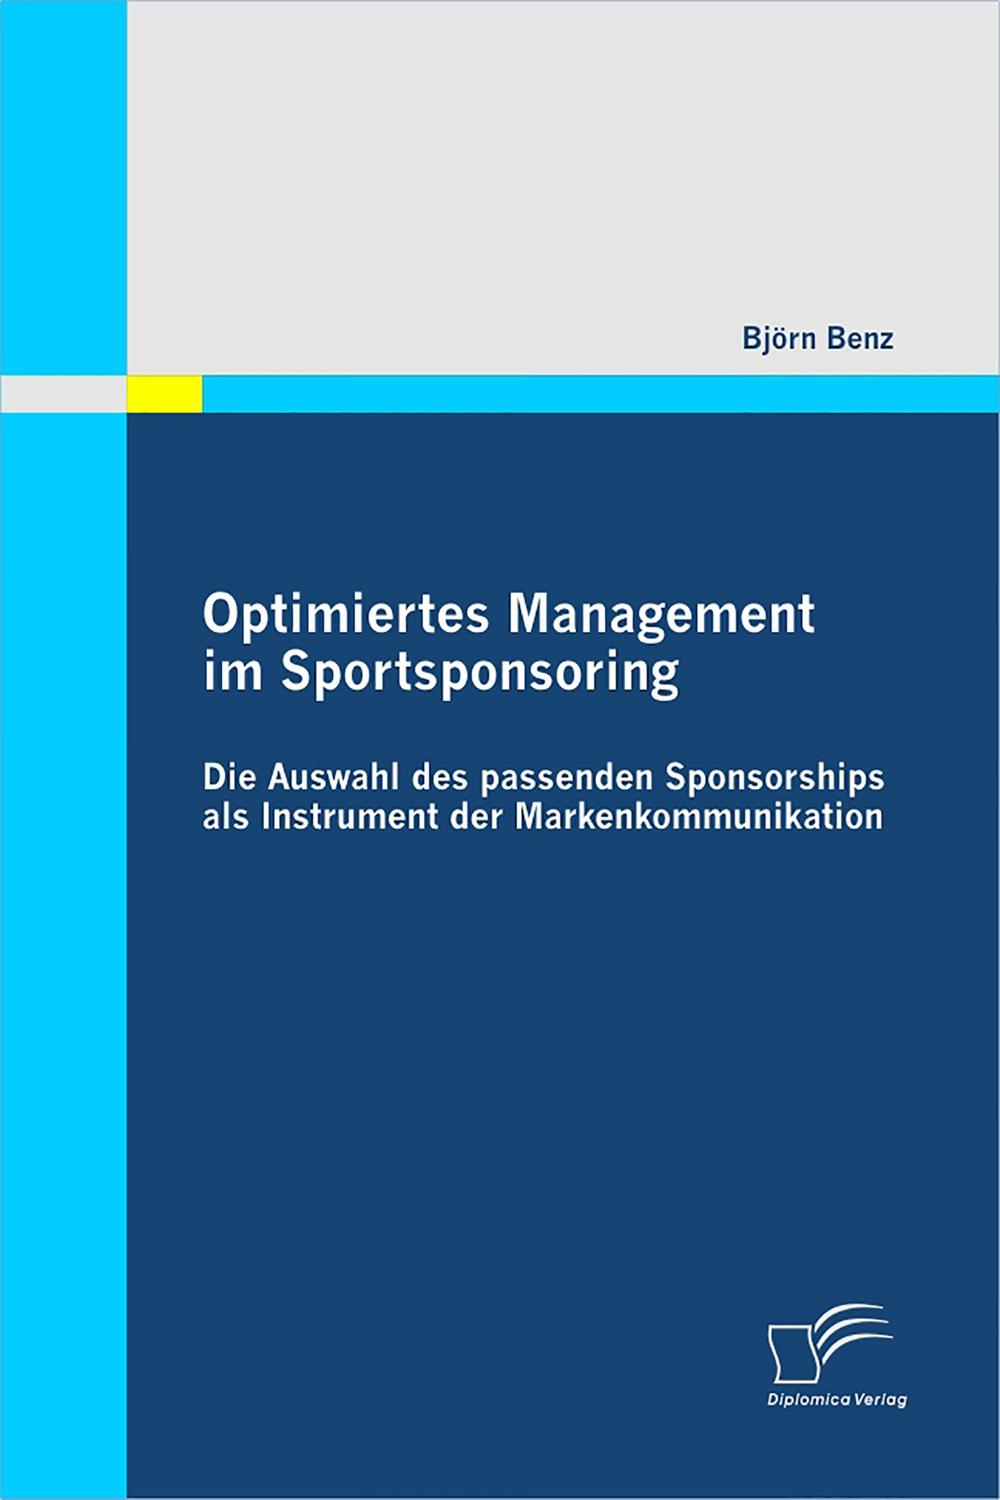 Optimiertes Management im Sportsponsoring: Die Auswahl des passenden Sponsorships als Instrument der Markenkommunikation - Bj?rn Benz,,